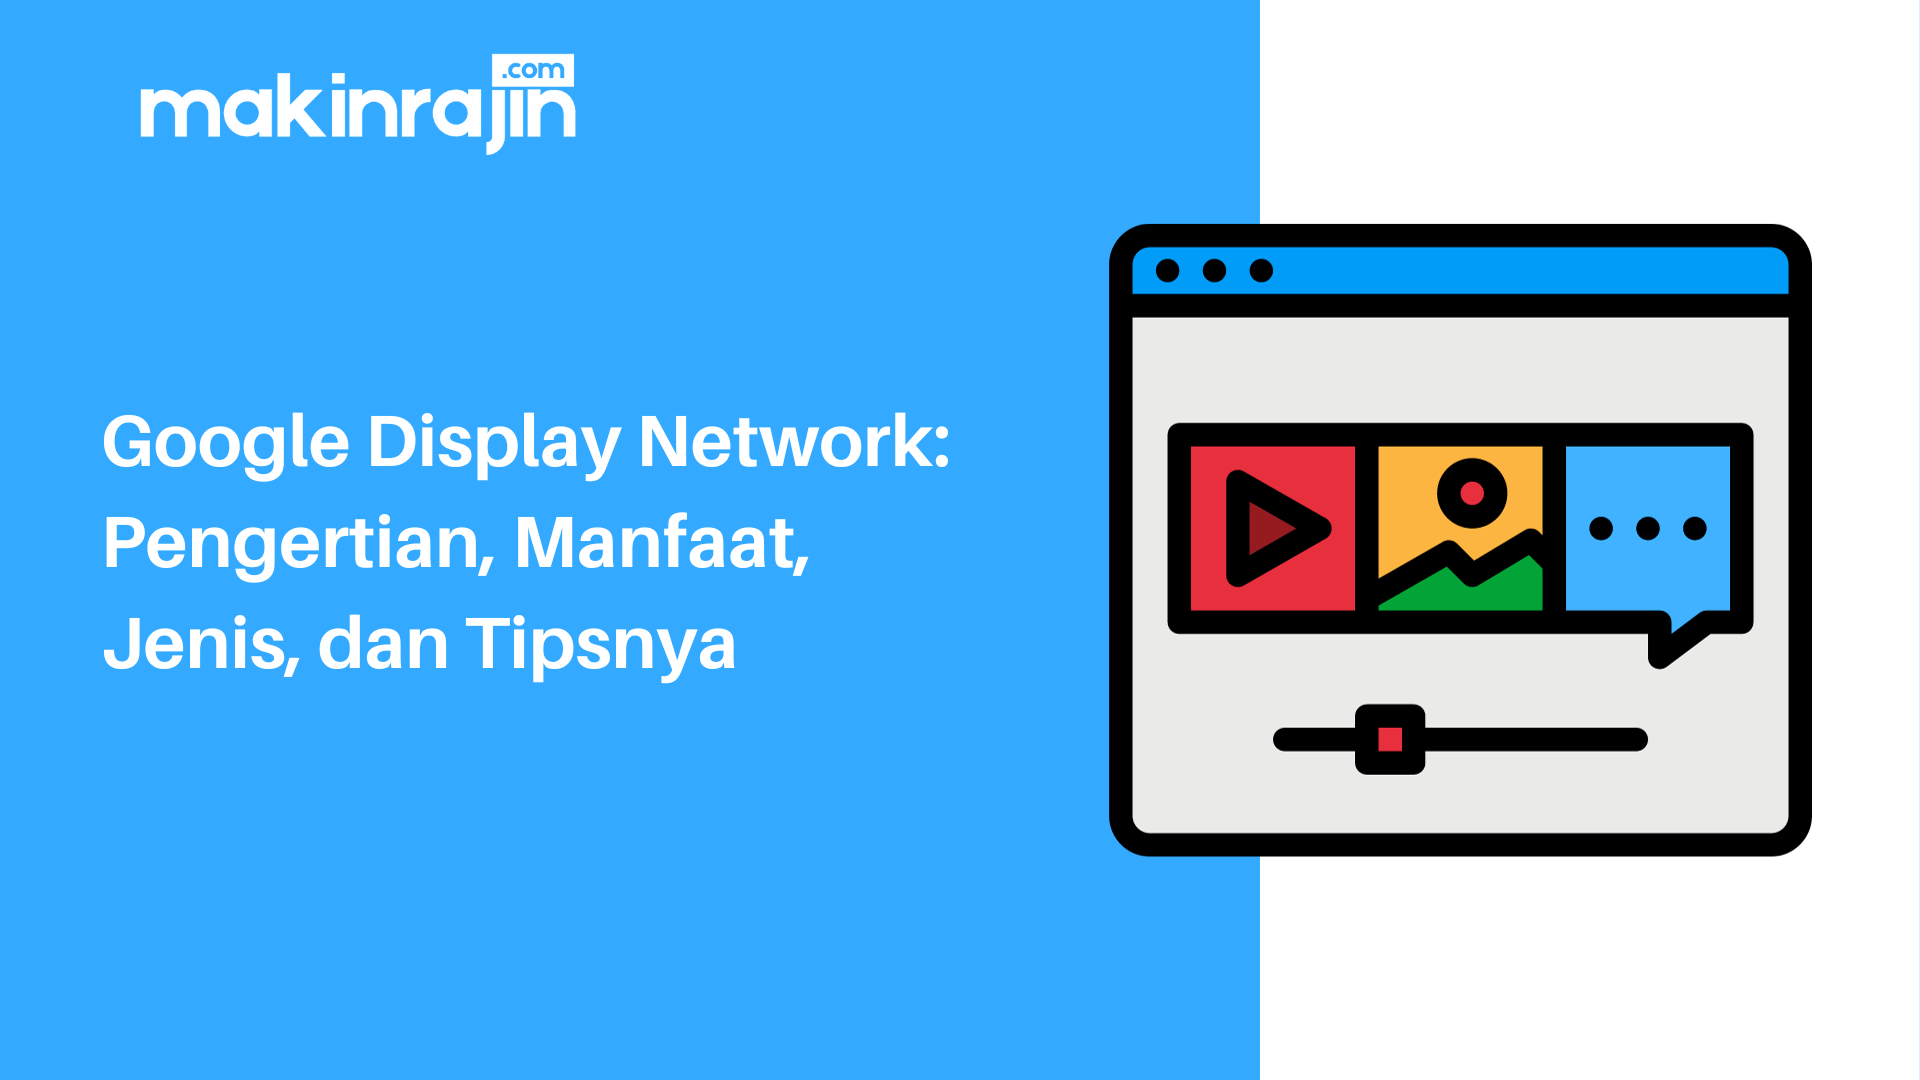 Google Display Network: Pengertian, Manfaat, Jenis, dan Tipsnya